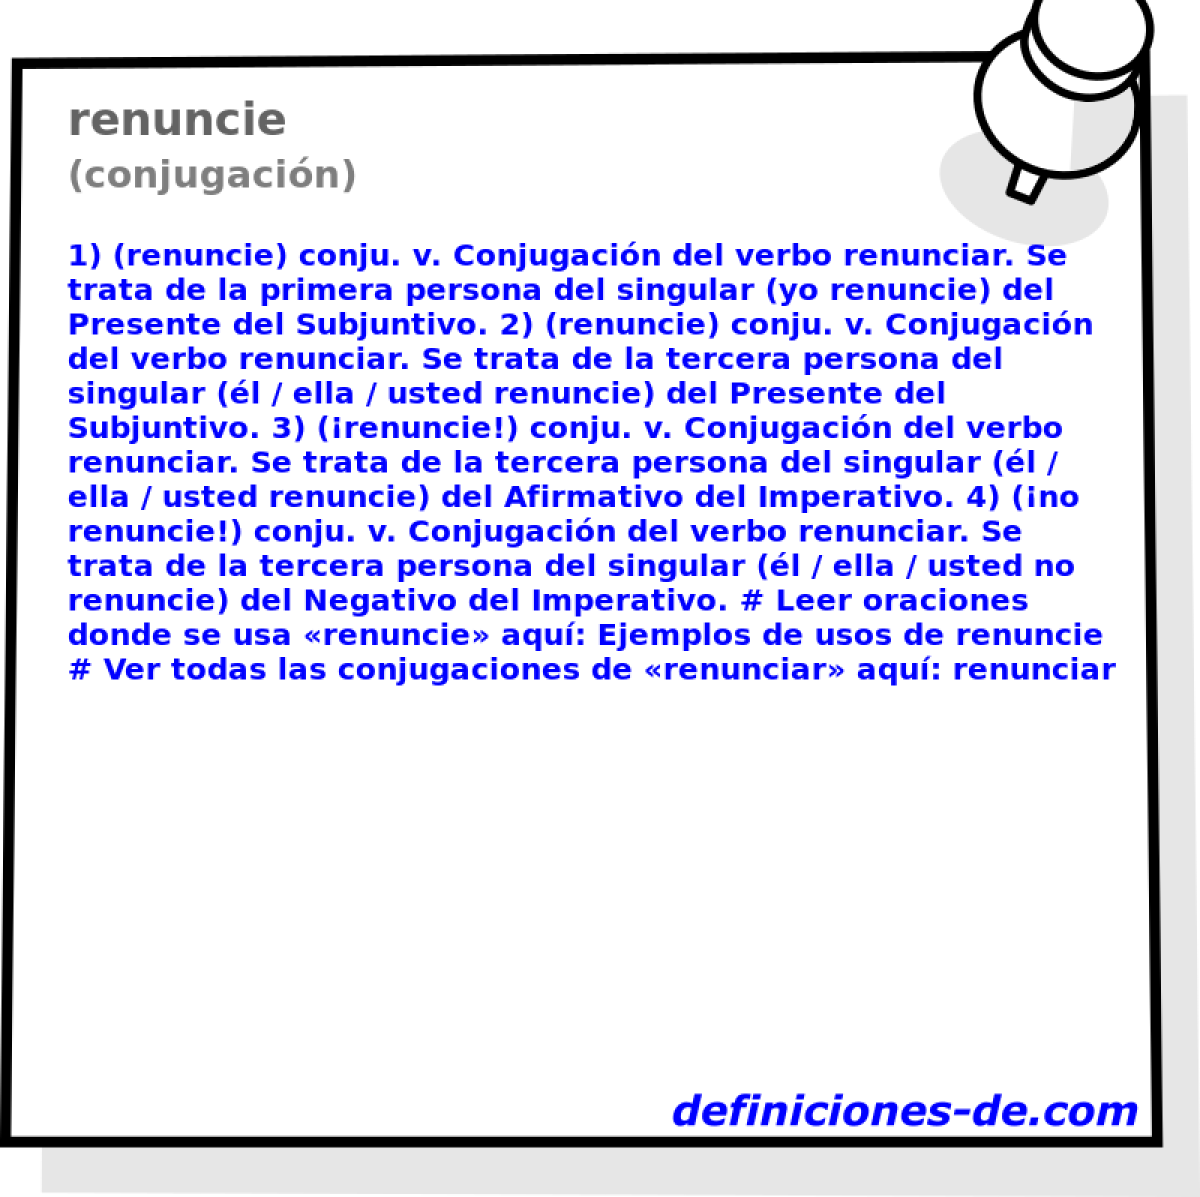 renuncie (conjugacin)